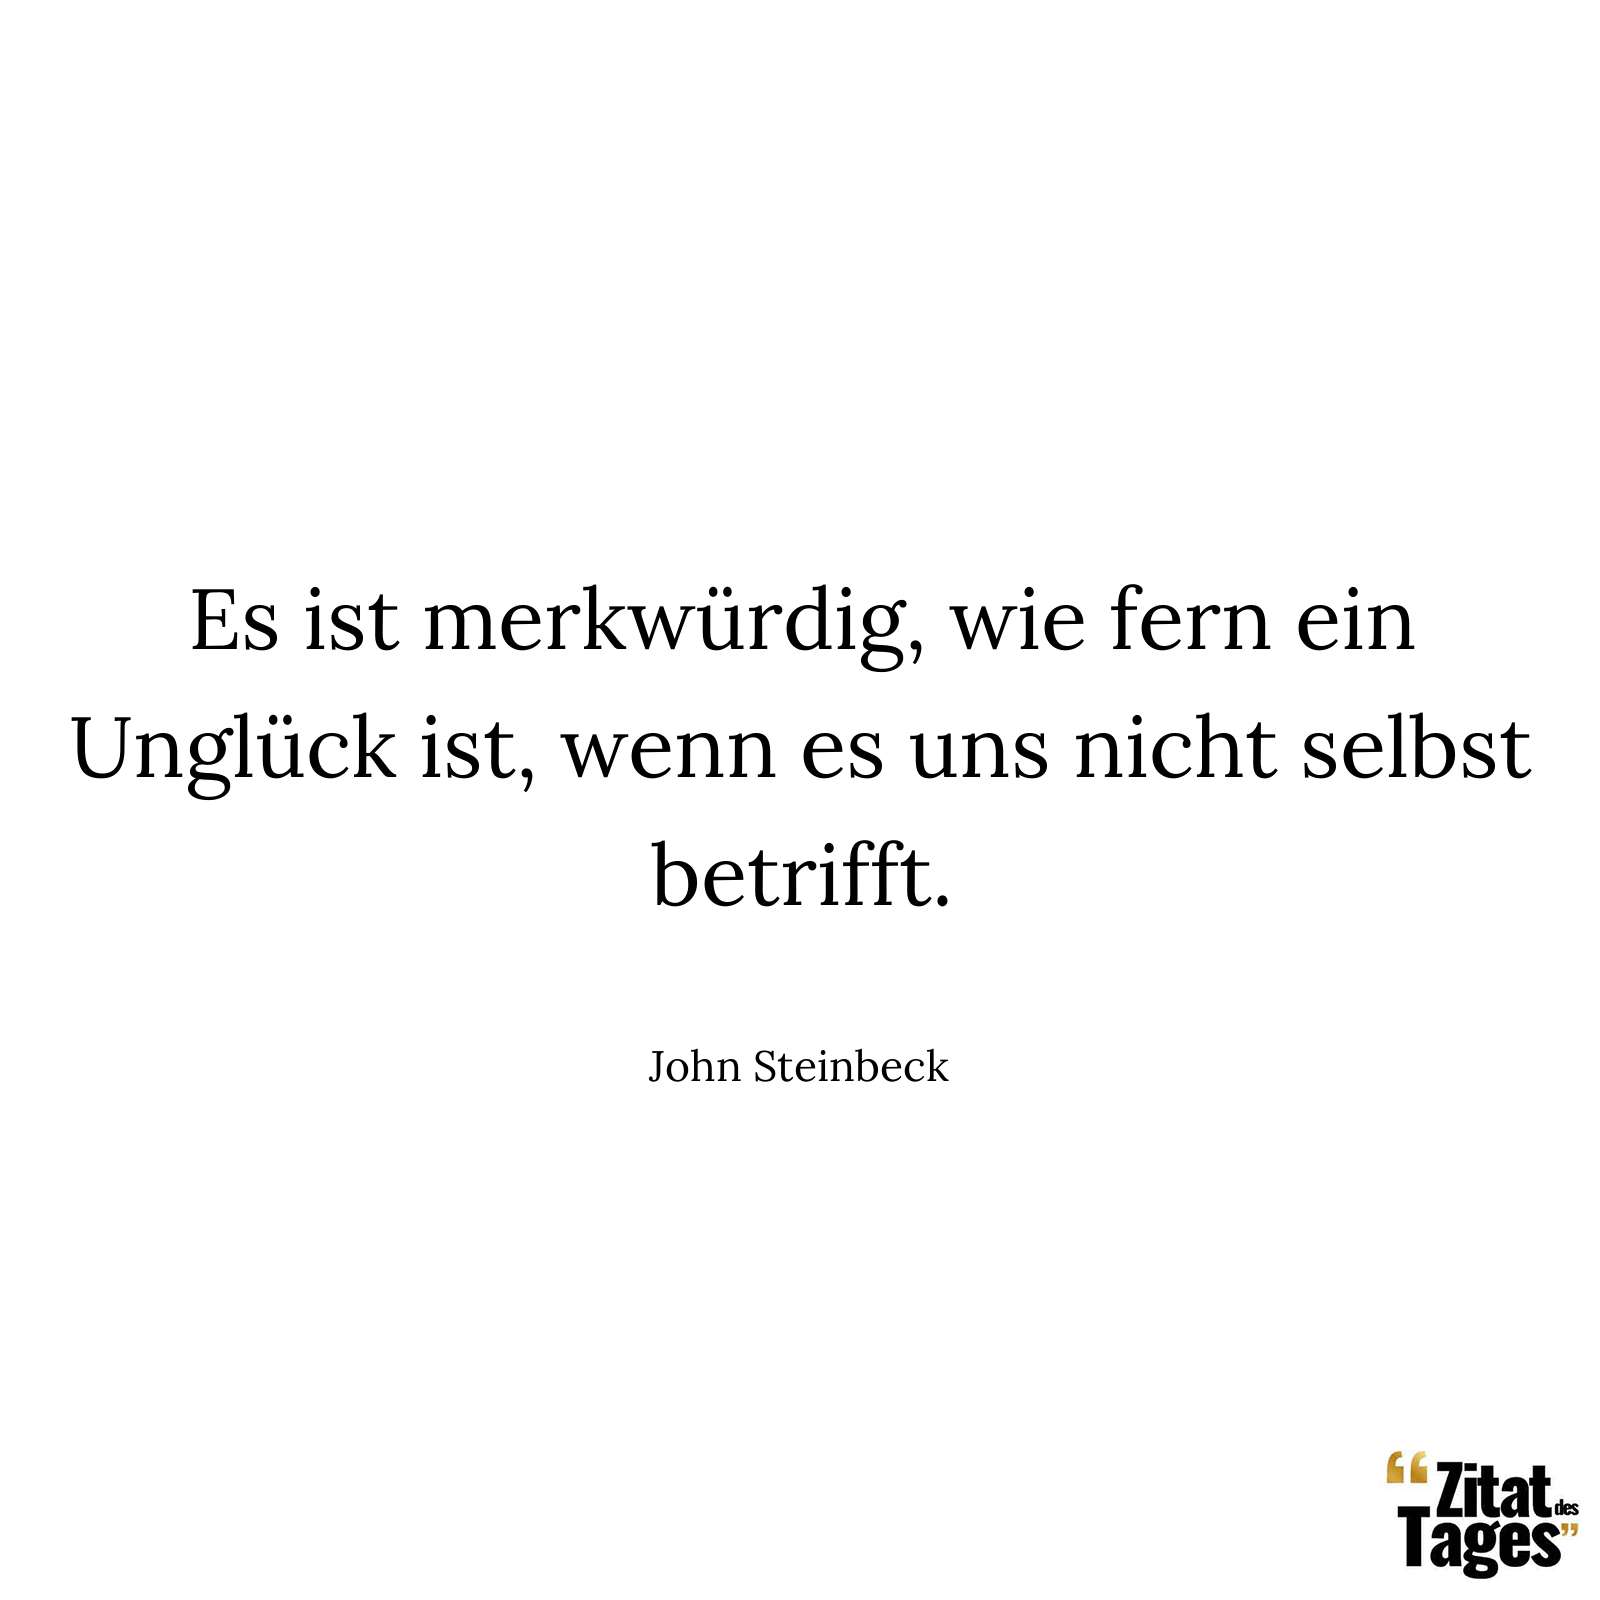 Es ist merkwürdig, wie fern ein Unglück ist, wenn es uns nicht selbst betrifft. - John Steinbeck